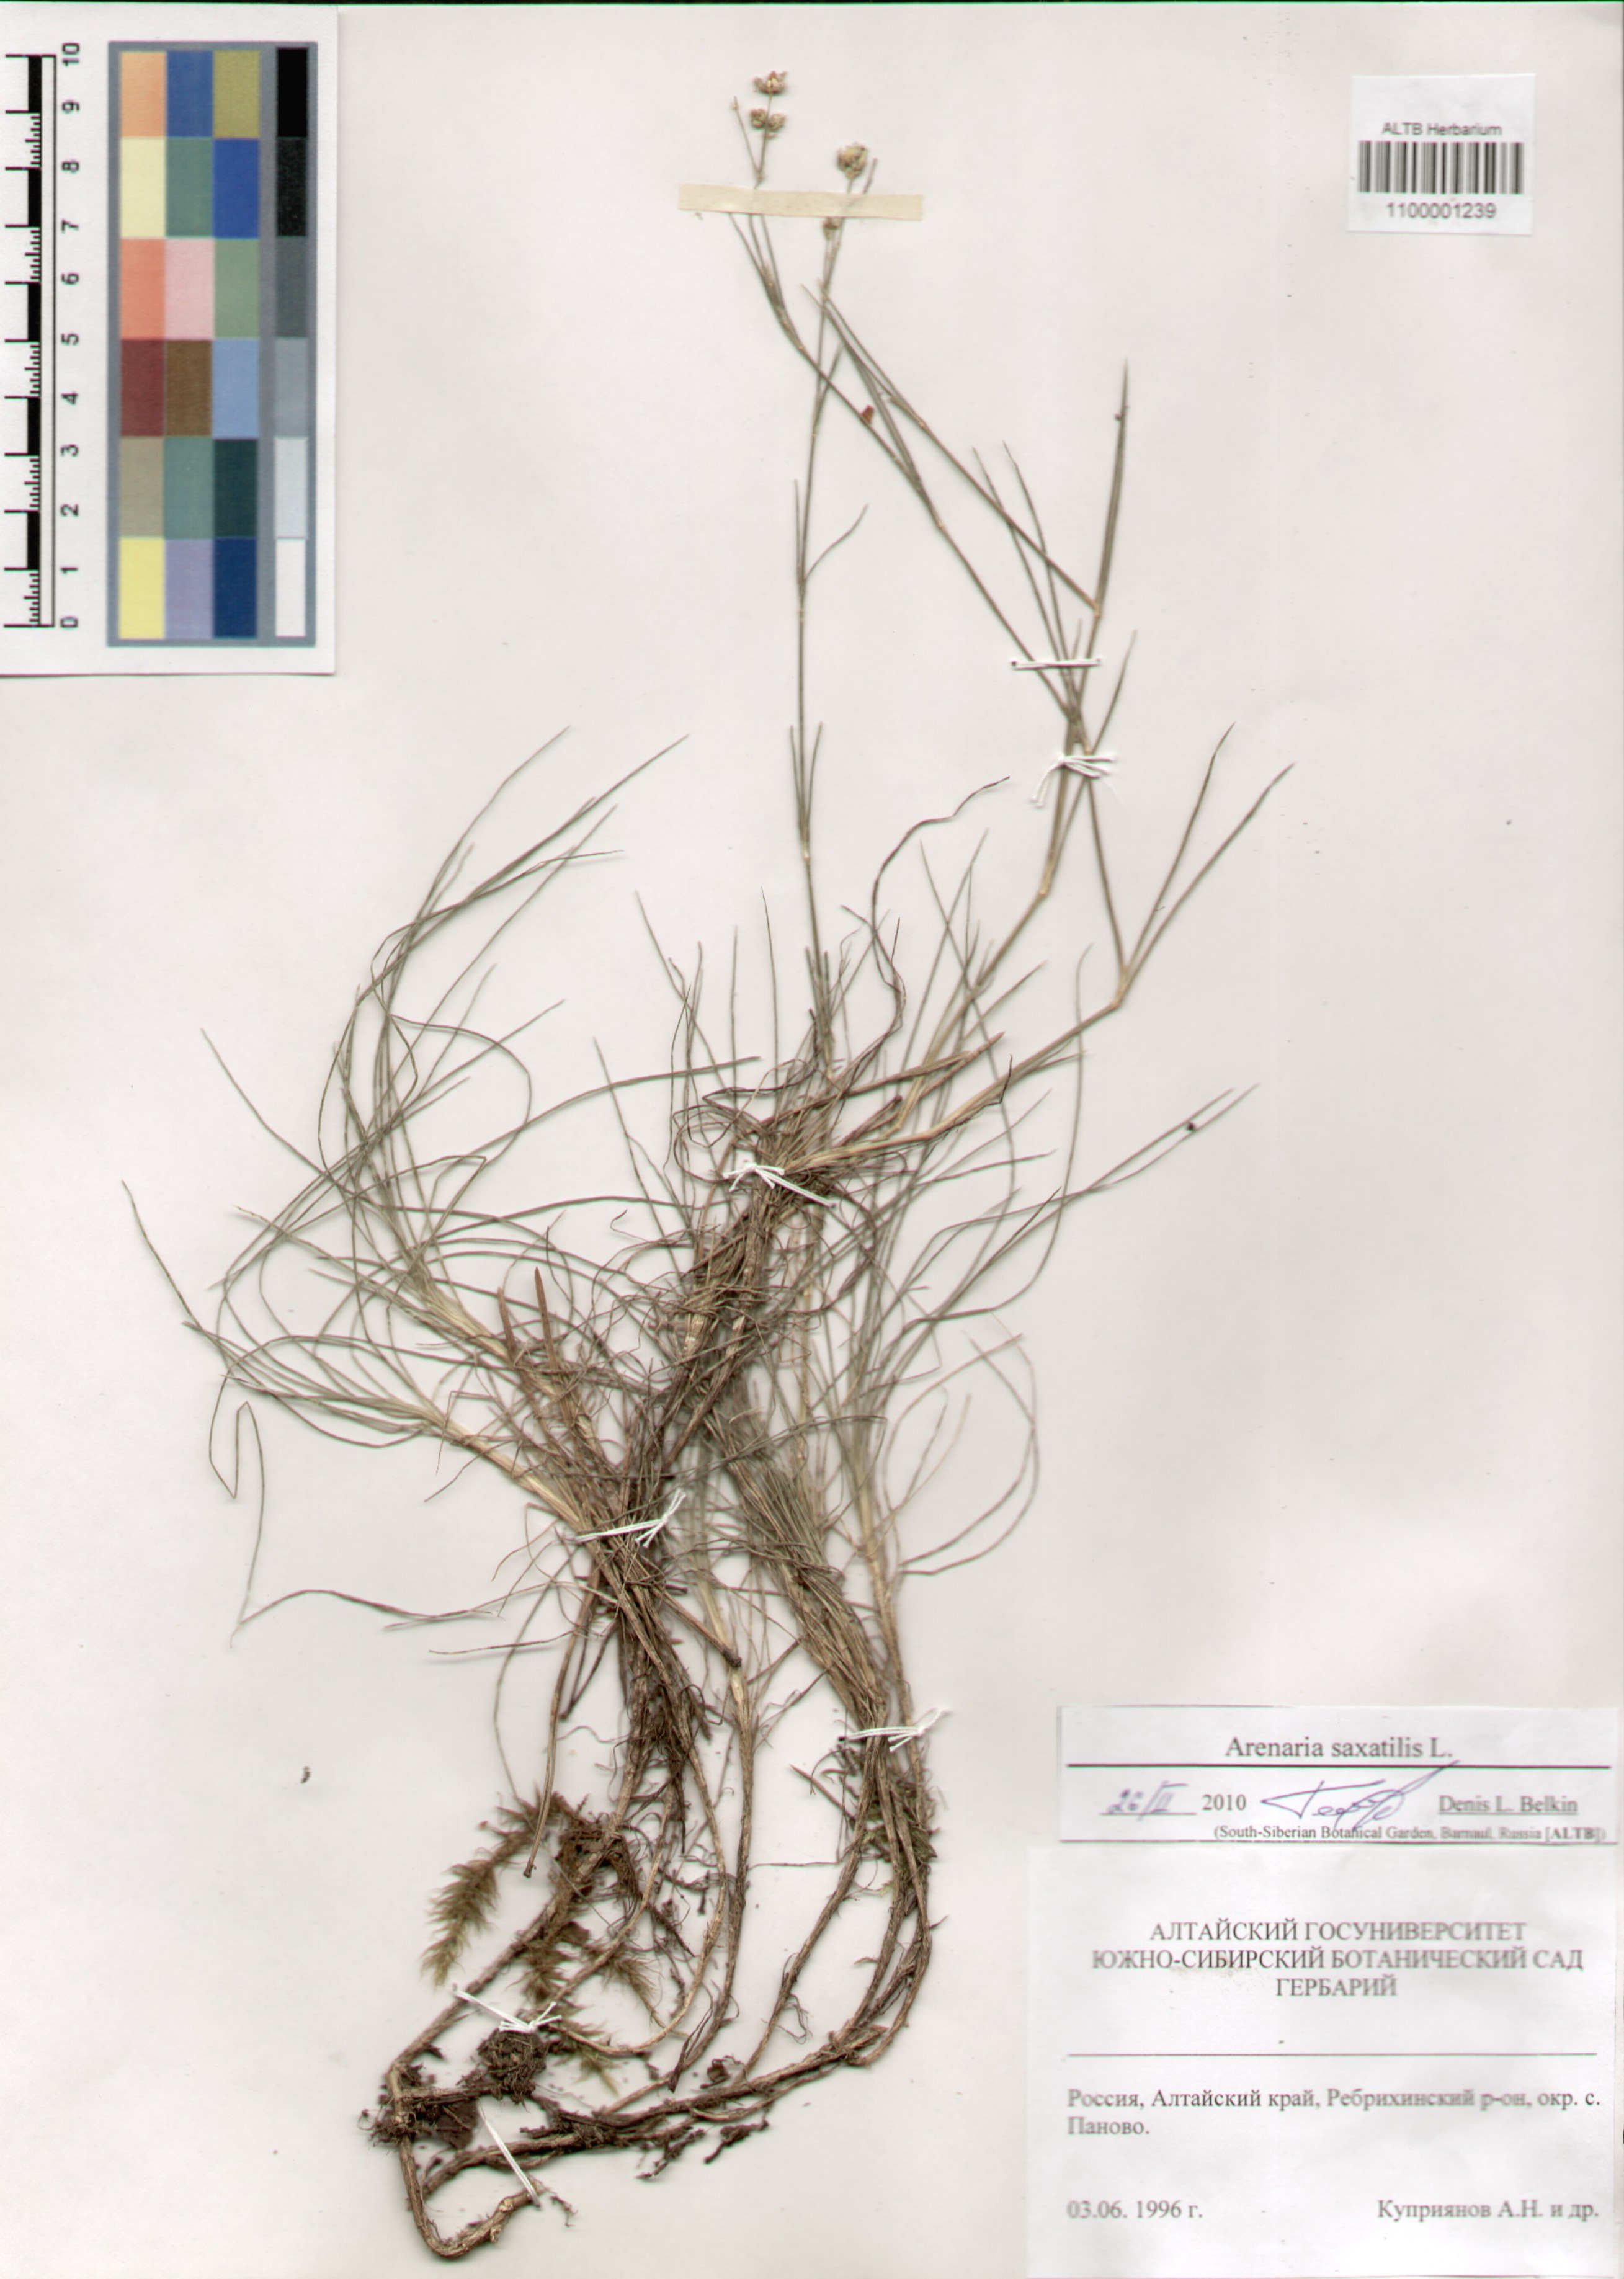 Caryophyllaceae,Arenaria saxatilis L.